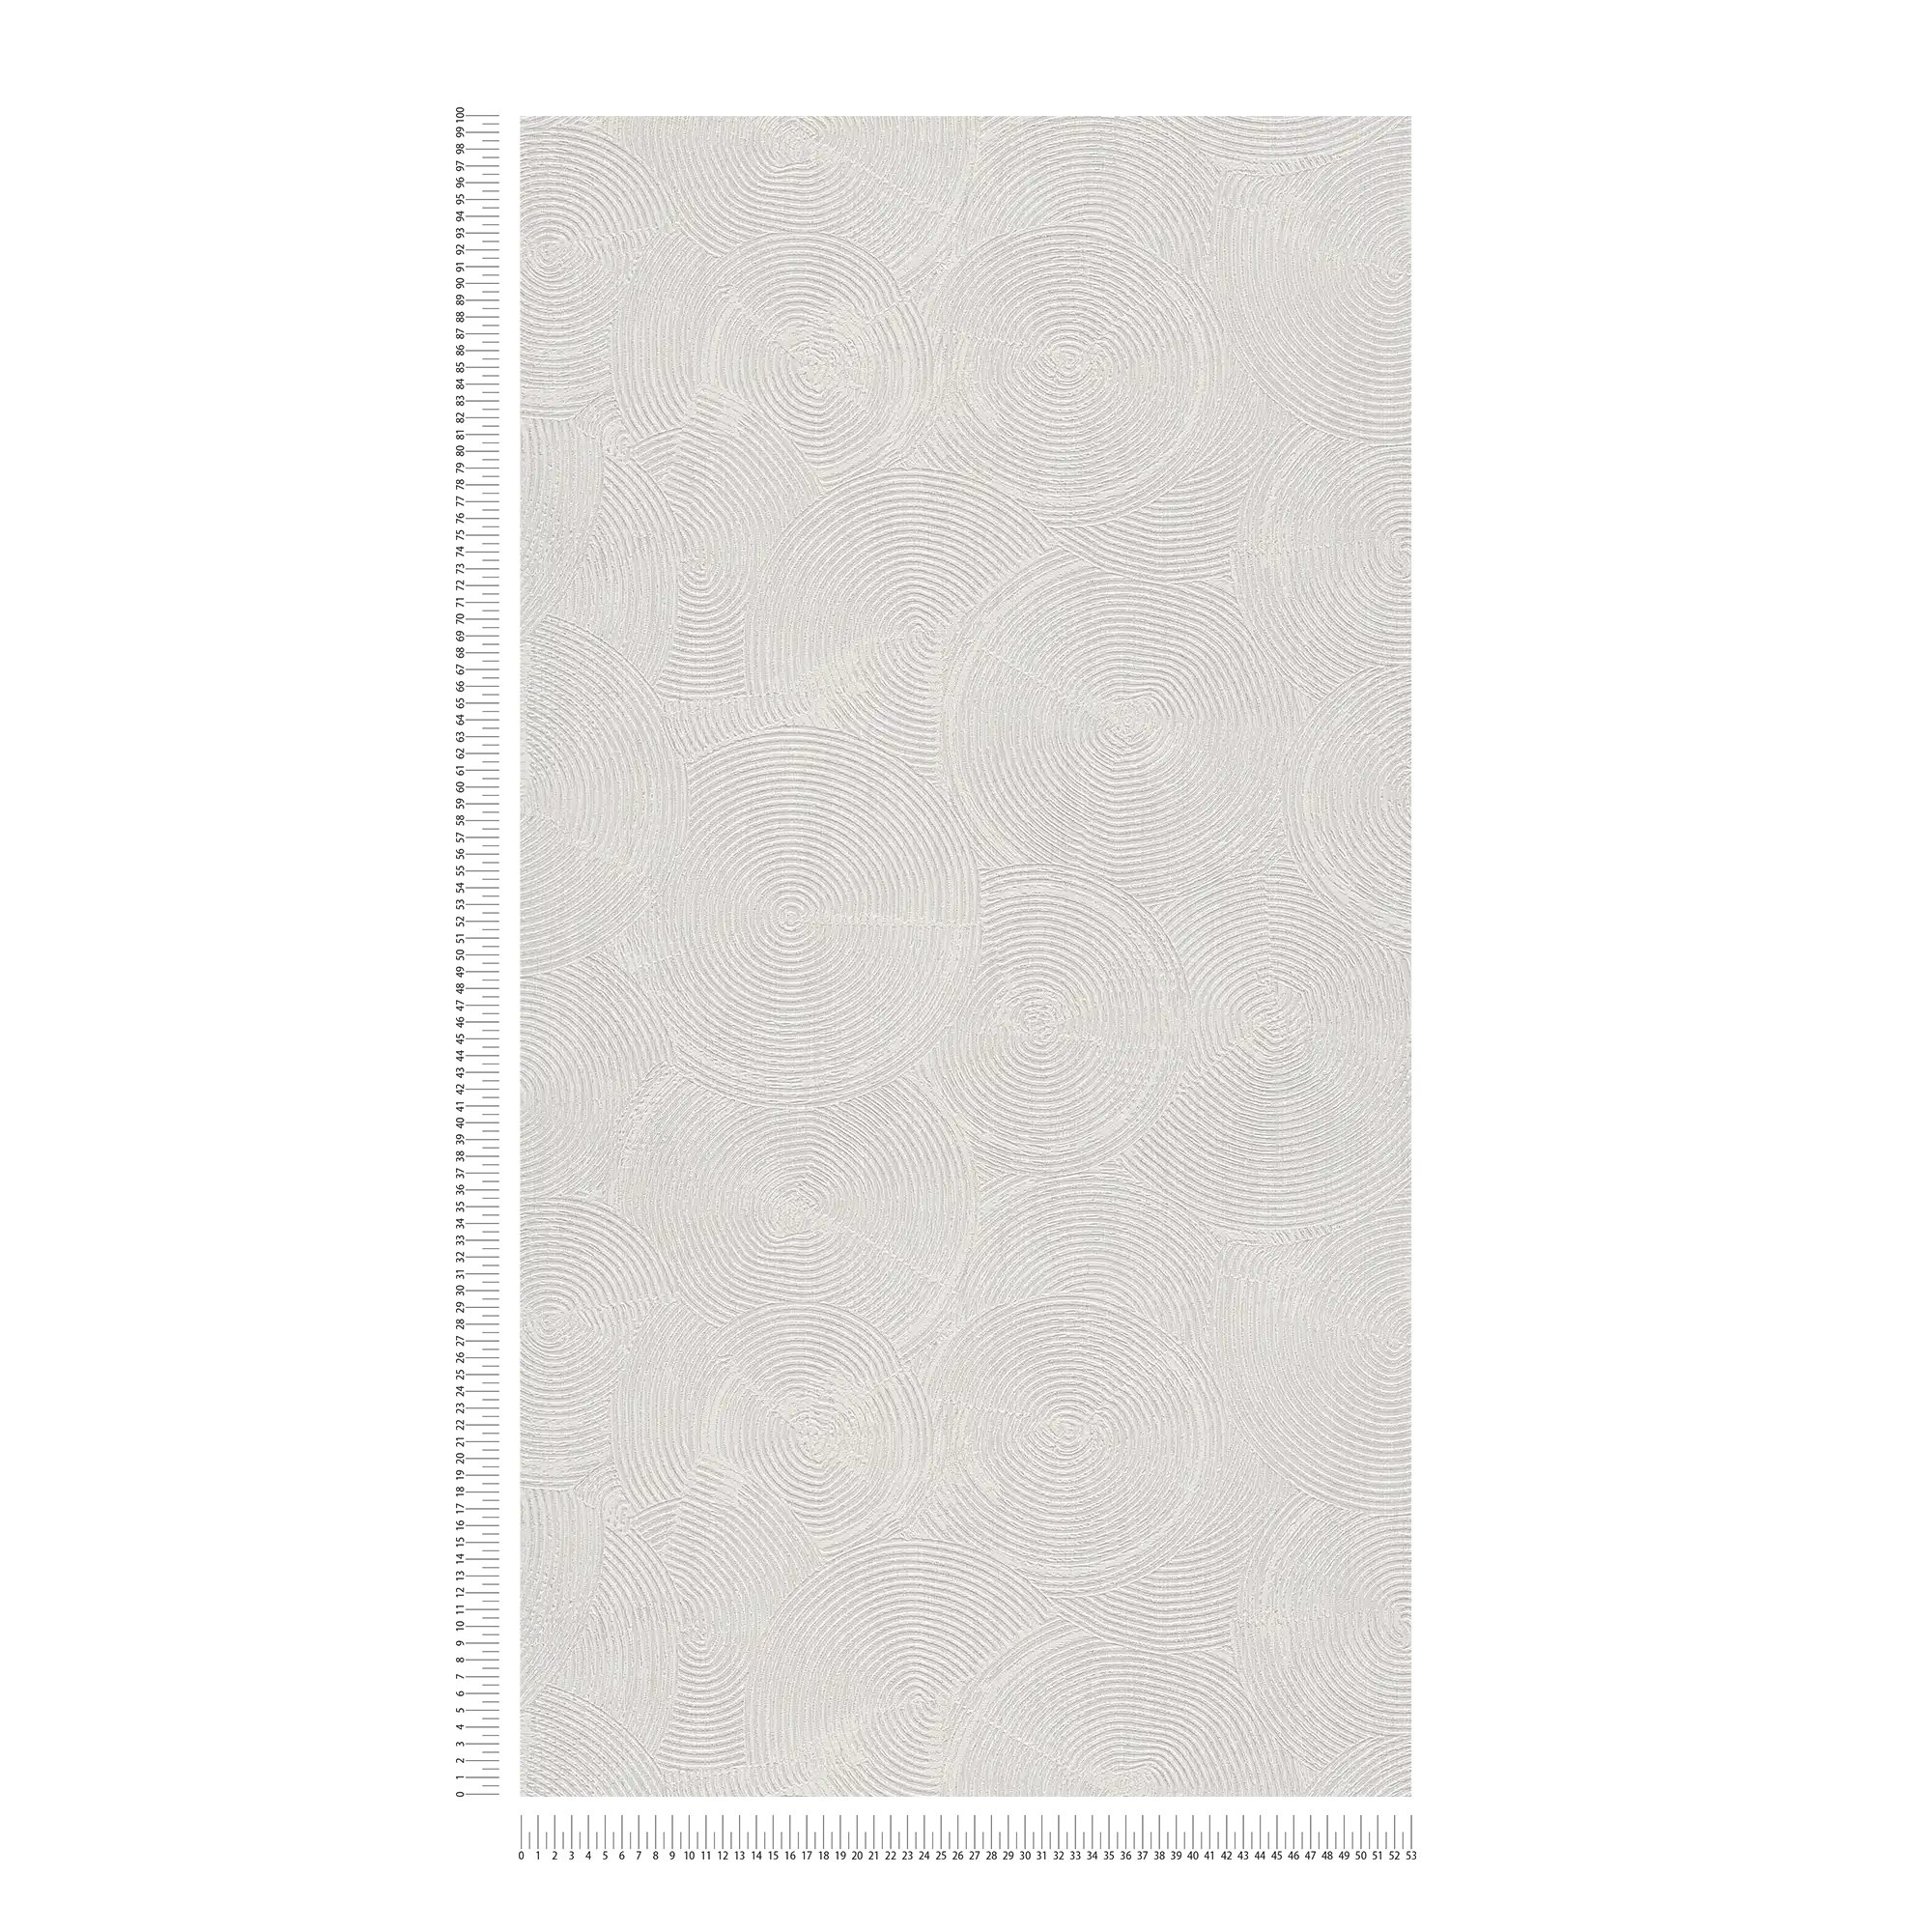             Carta da parati con aspetto moderno di intonaco e accenti metallici - grigio, metallico, bianco
        